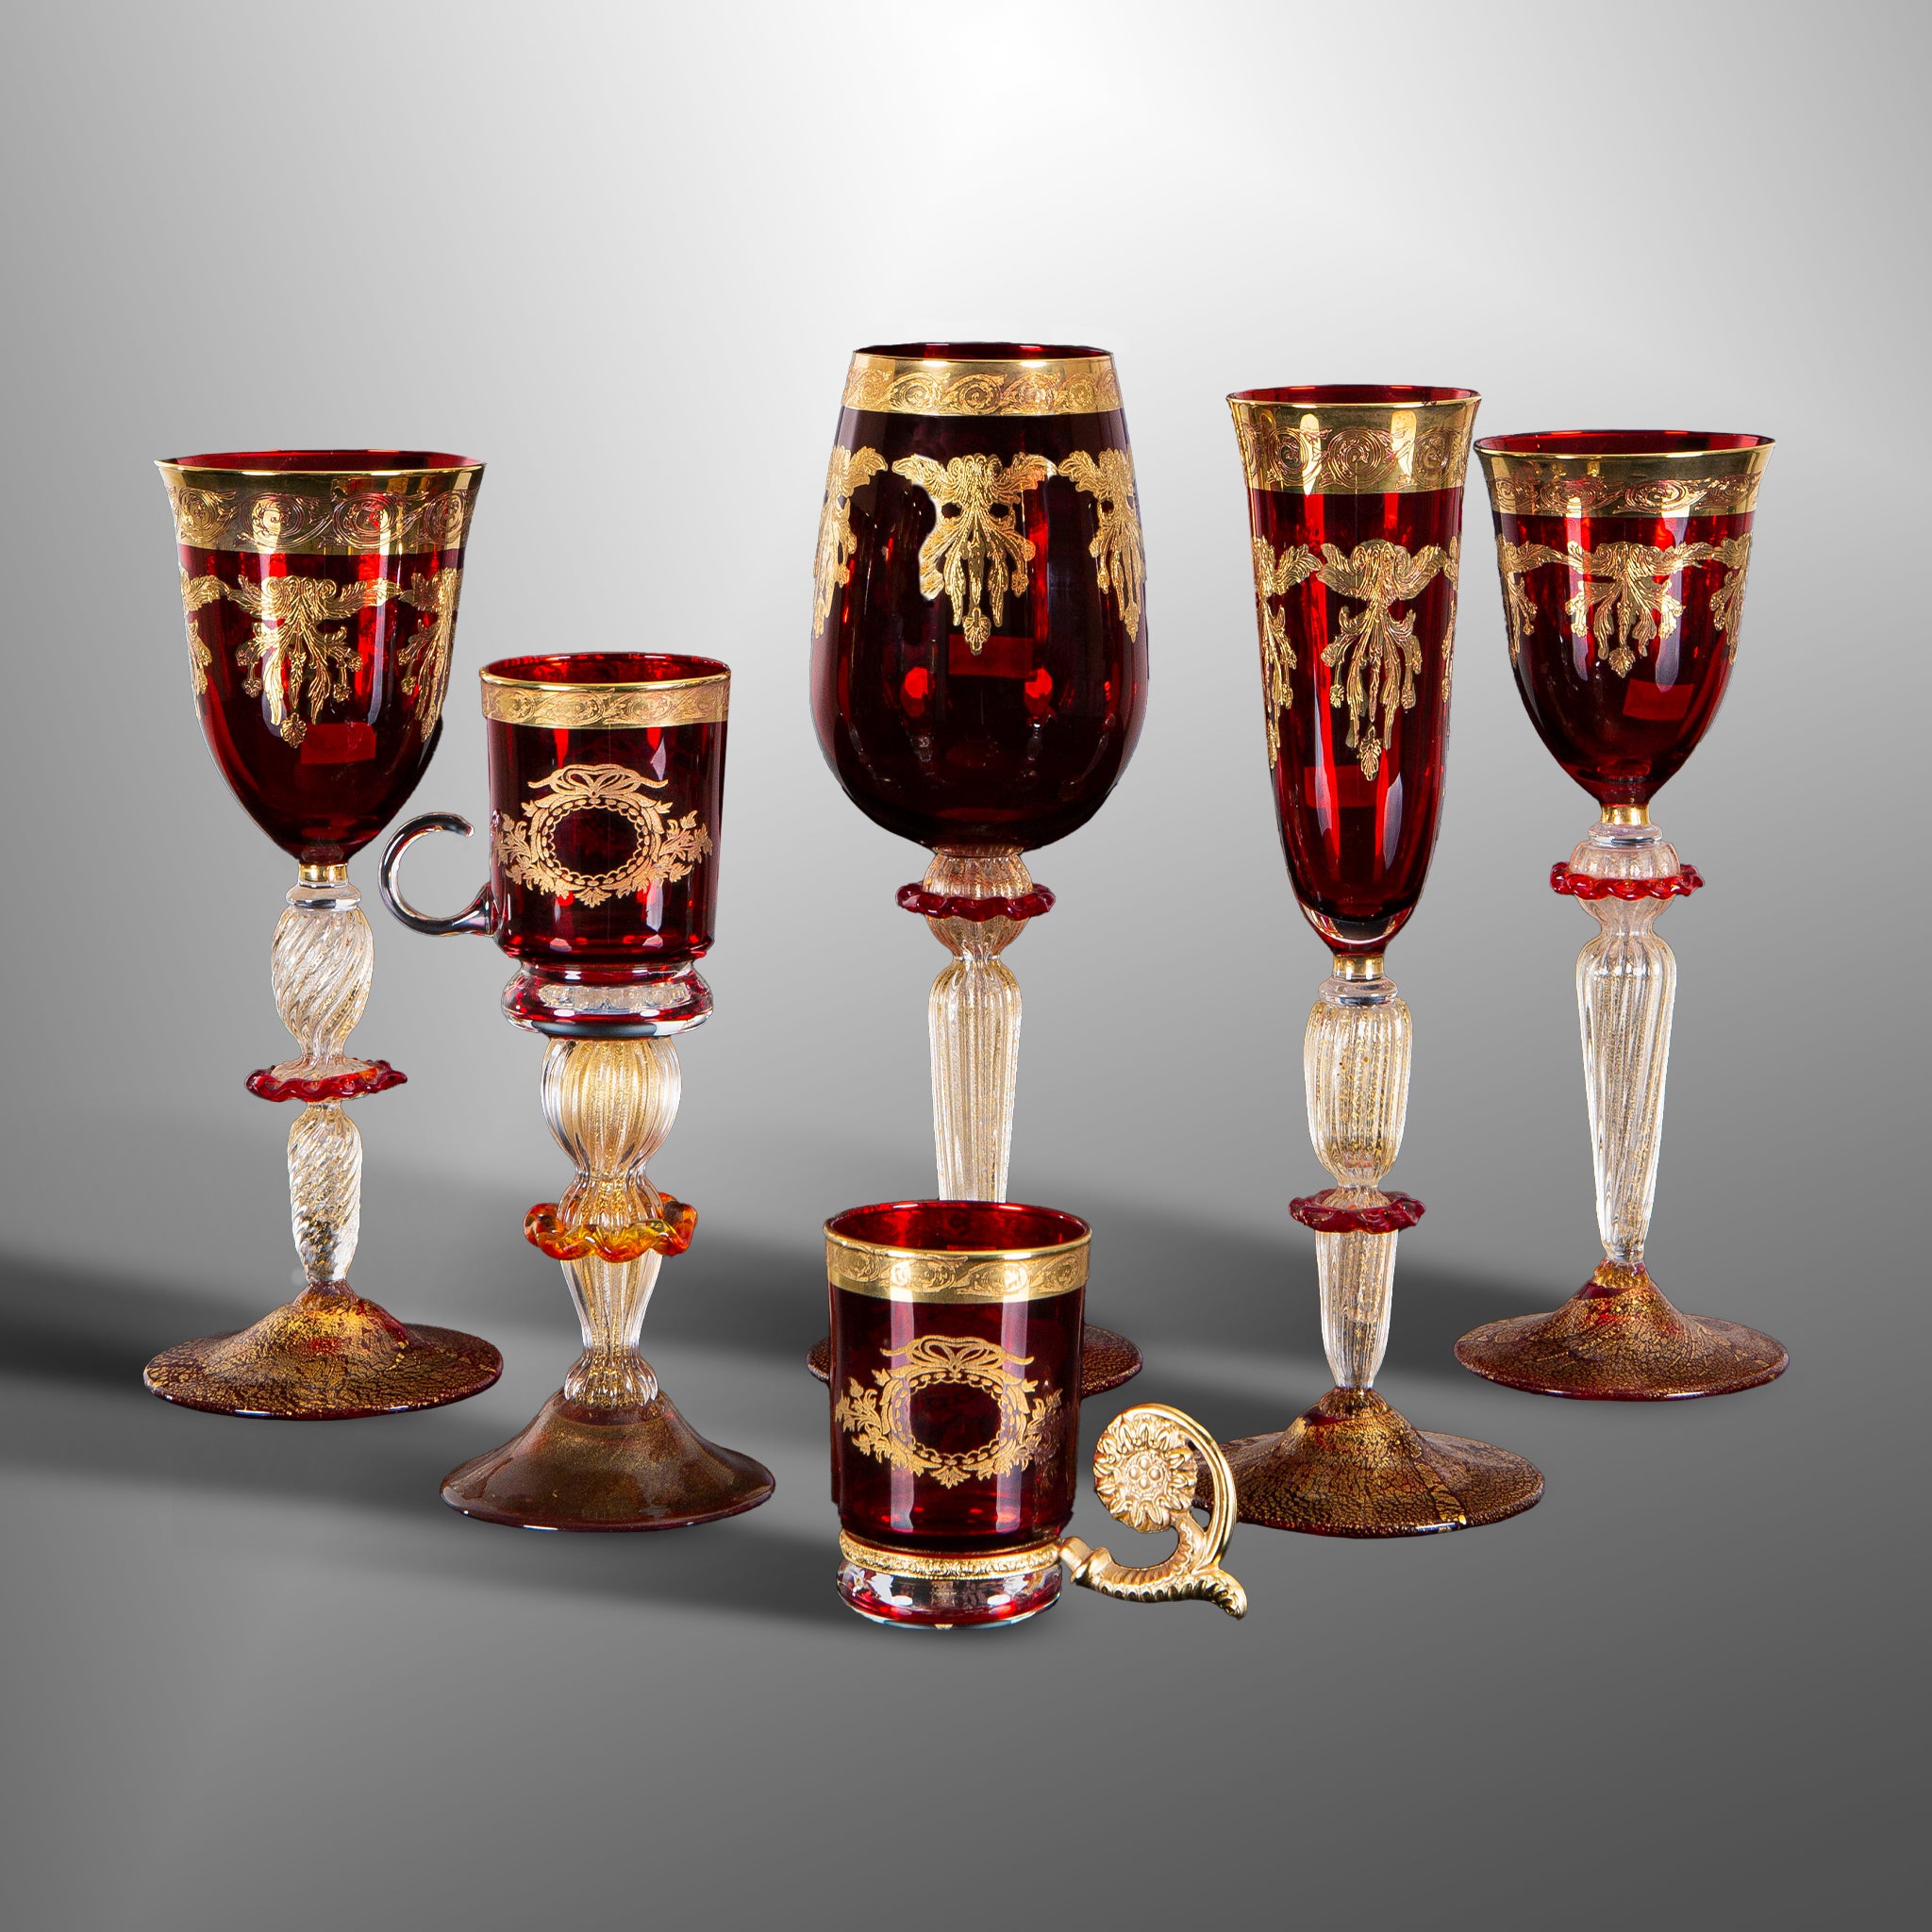 Bicchieri con decori in oro